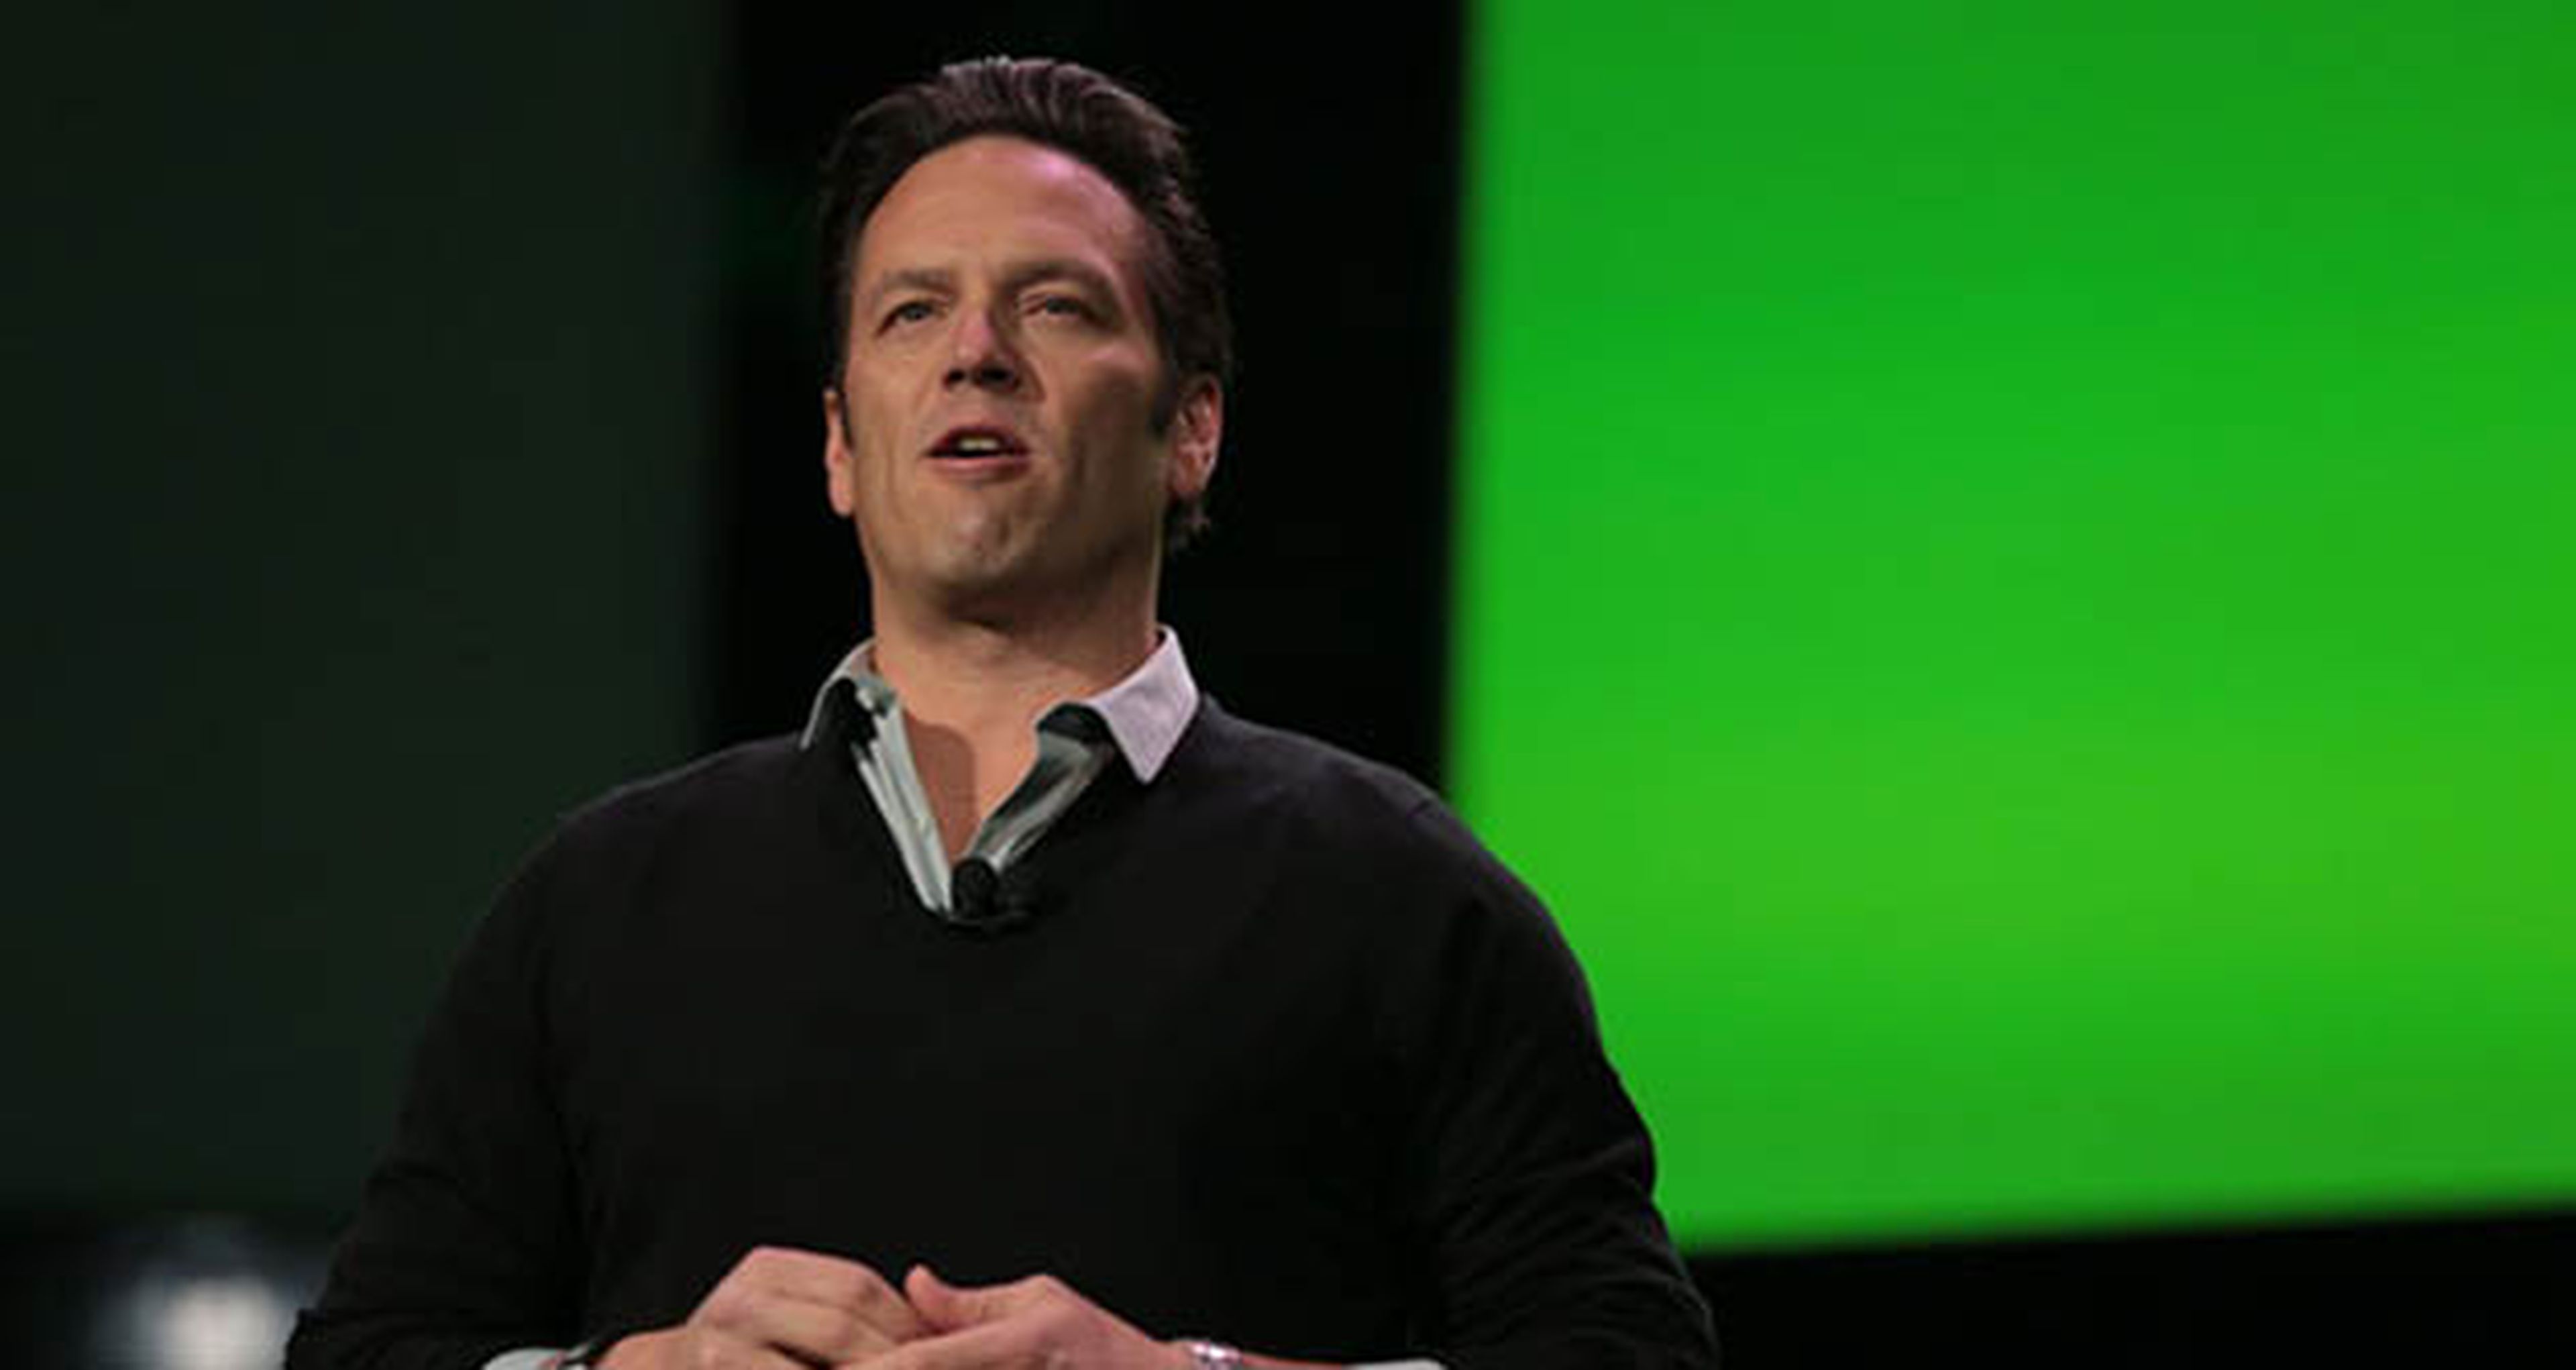 Xbox One, Phil Spencer habla sobre 2016 y sus juegos exclusivos